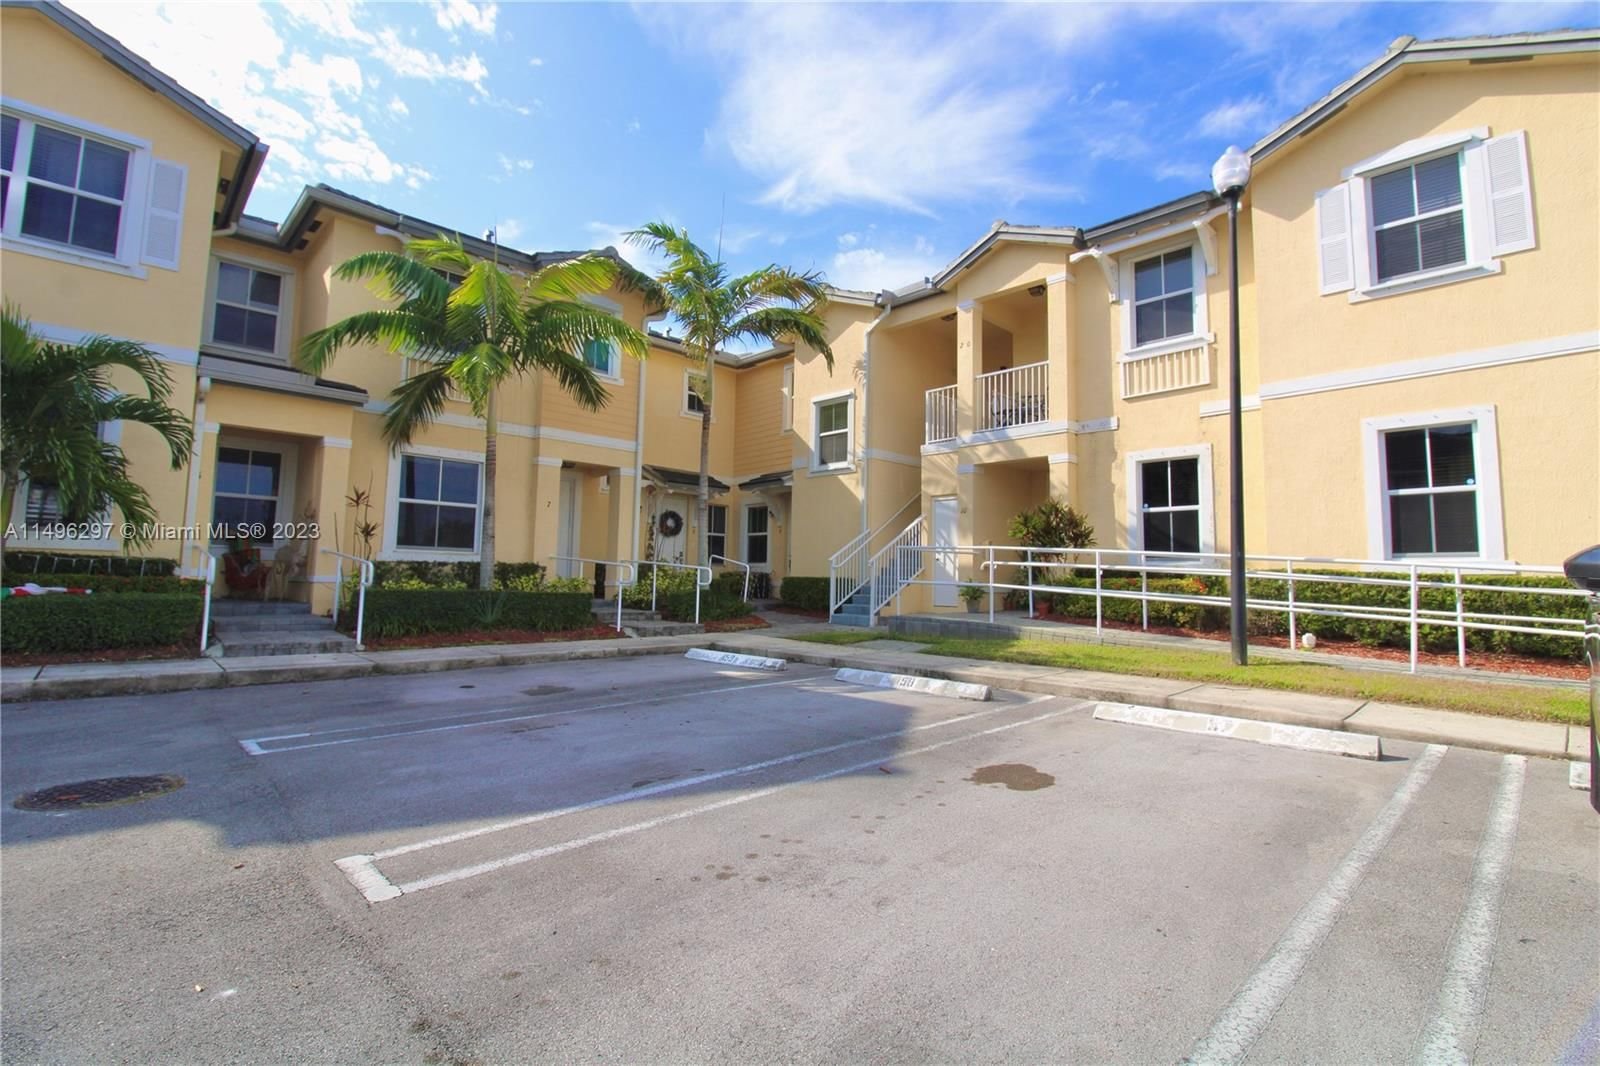 Real estate property located at 134 28th Ter #9, Miami-Dade County, FIJI CONDO NO 1, Homestead, FL